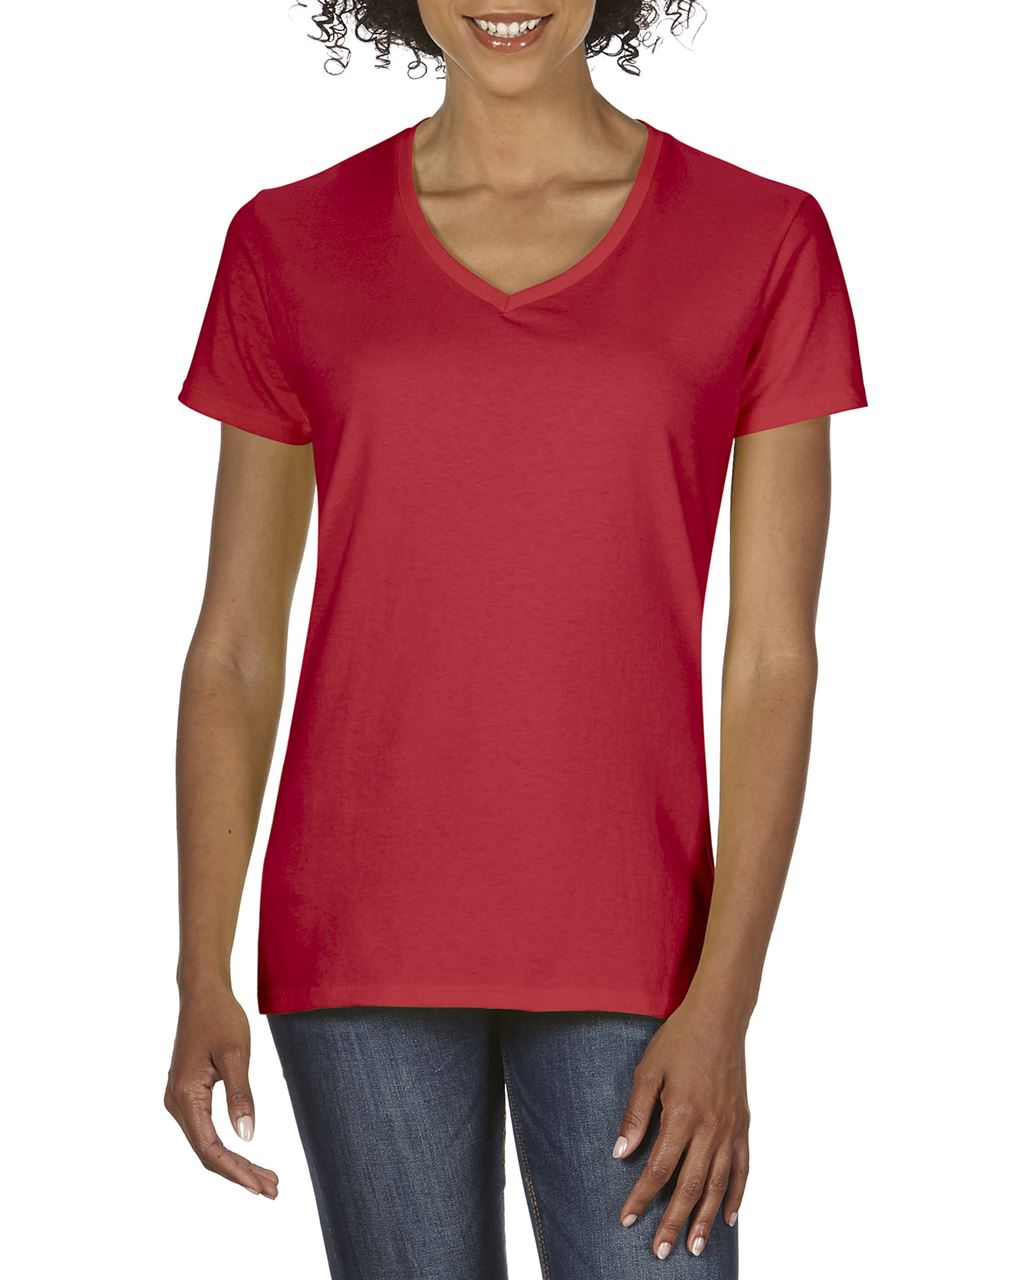 Gildan Damen T-Shirt V-Neck Shirt V-Ausschnitt Baumwolle Oberteil